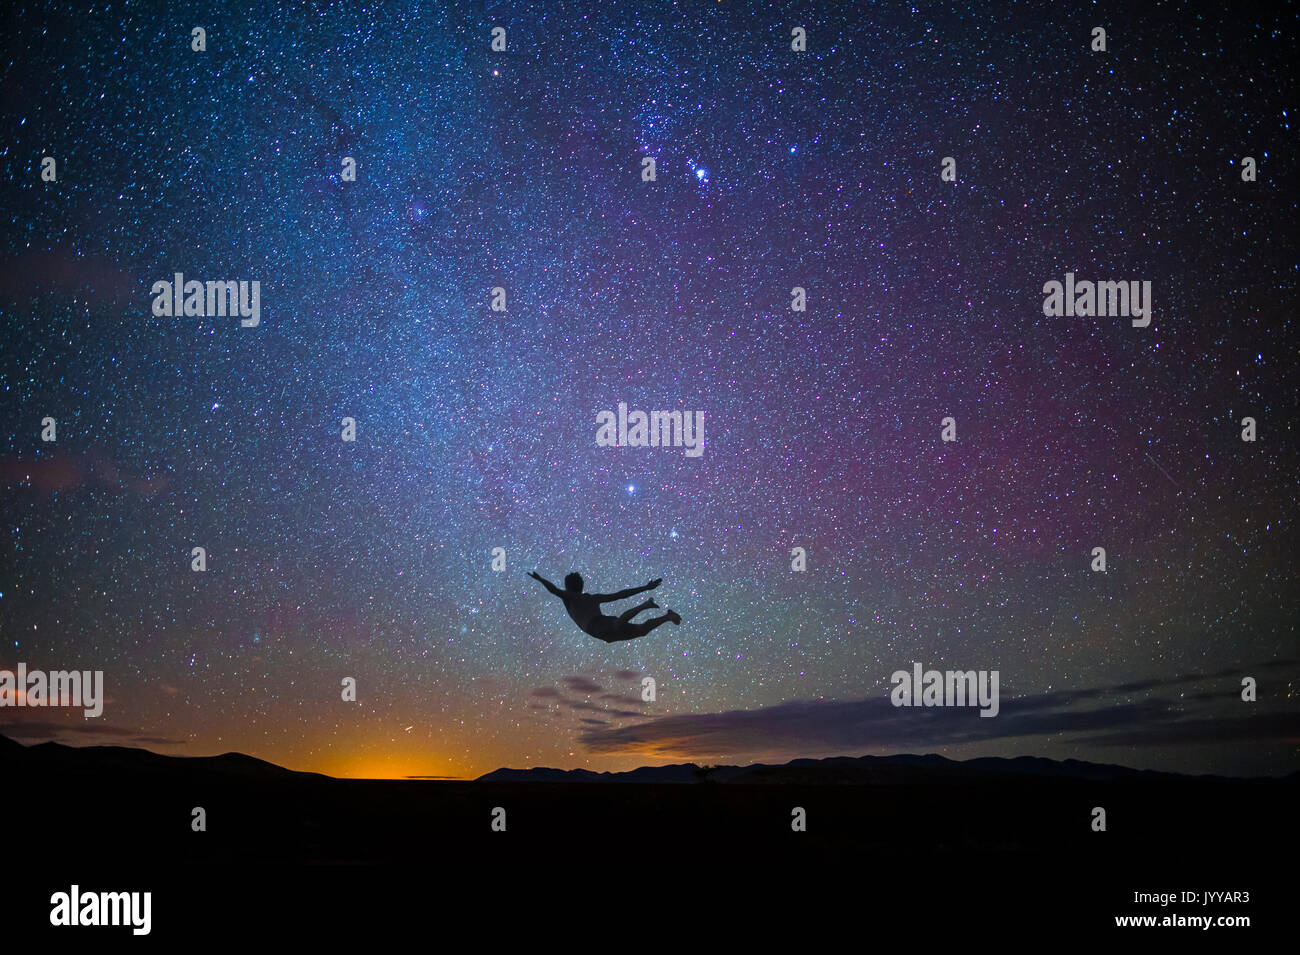 Boy Jumping in Luft bei Sonnenuntergang mit Sternen Stockfoto